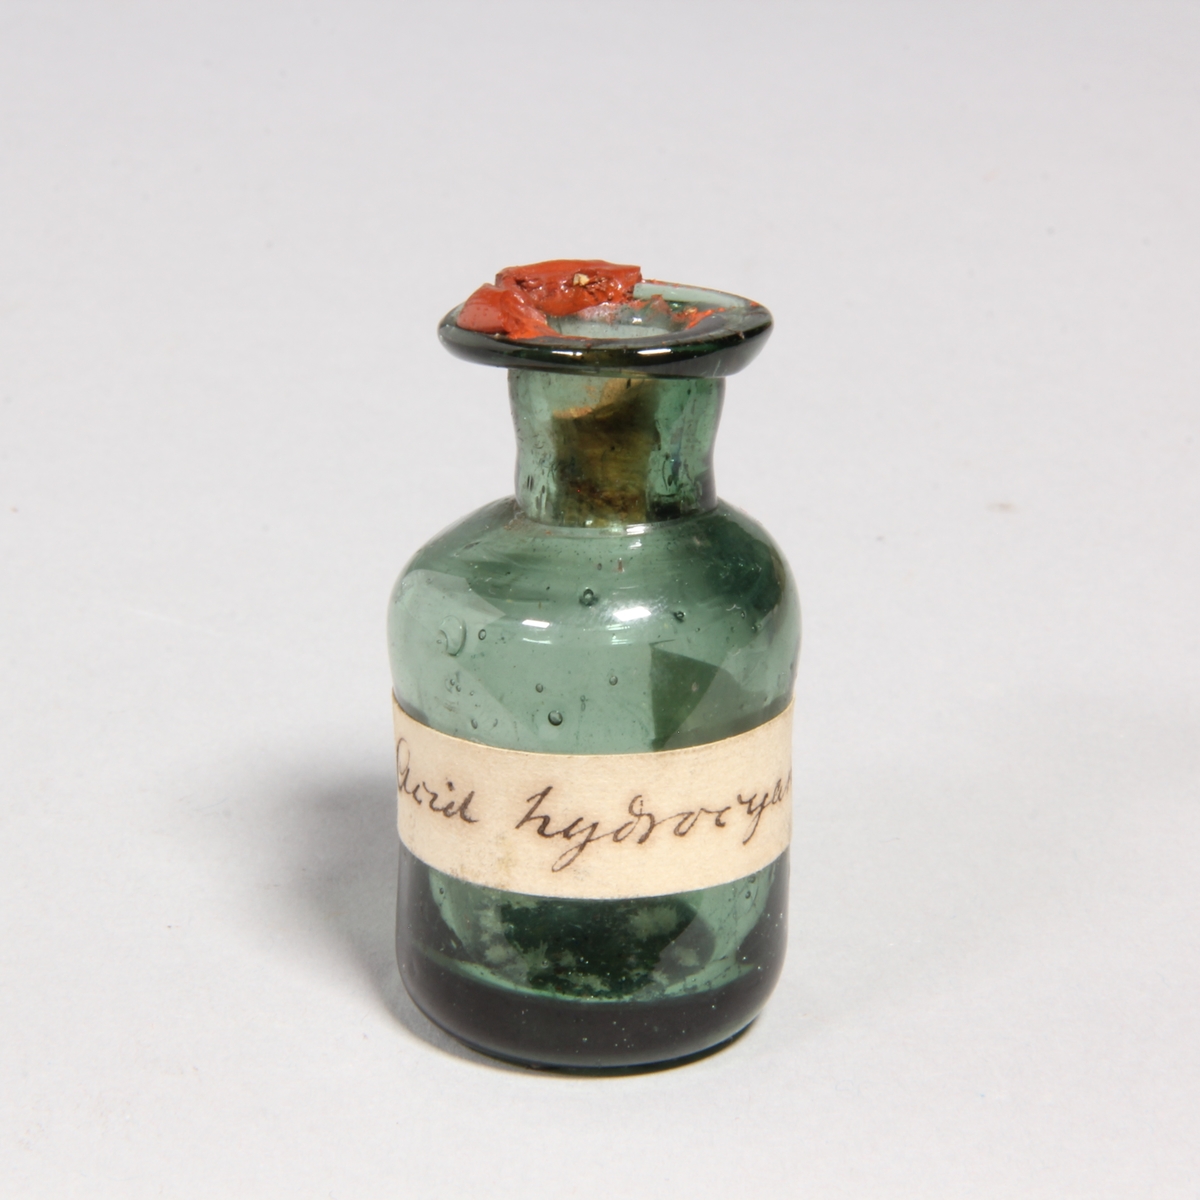 Flaskor, 10 st, av grönt glas med proppar av kork förseglade med rött lack. Står i pappask med lock klädd med marmorerat papper. Flaskorna innehåller rester av cyanid.